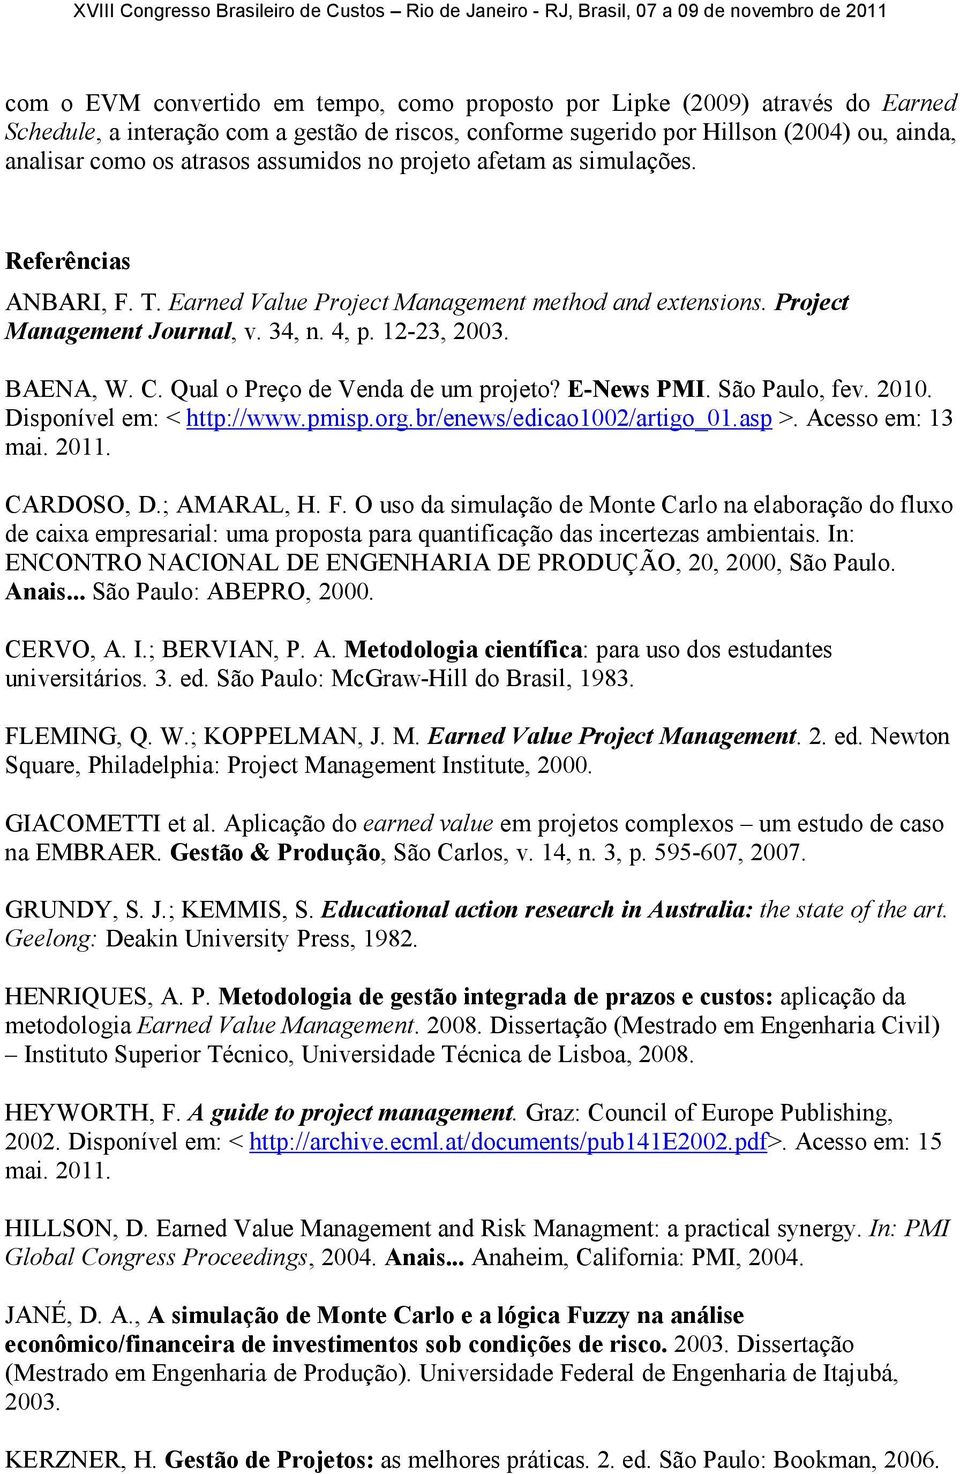 Qual o Preço de Venda de um projeto? E-News PMI. São Paulo, fev. 2010. Disponível em: < http://www.pmisp.org.br/enews/edicao1002/artigo_01.asp >. Acesso em: 13 mai. 2011. CARDOSO, D.; AMARAL, H. F.